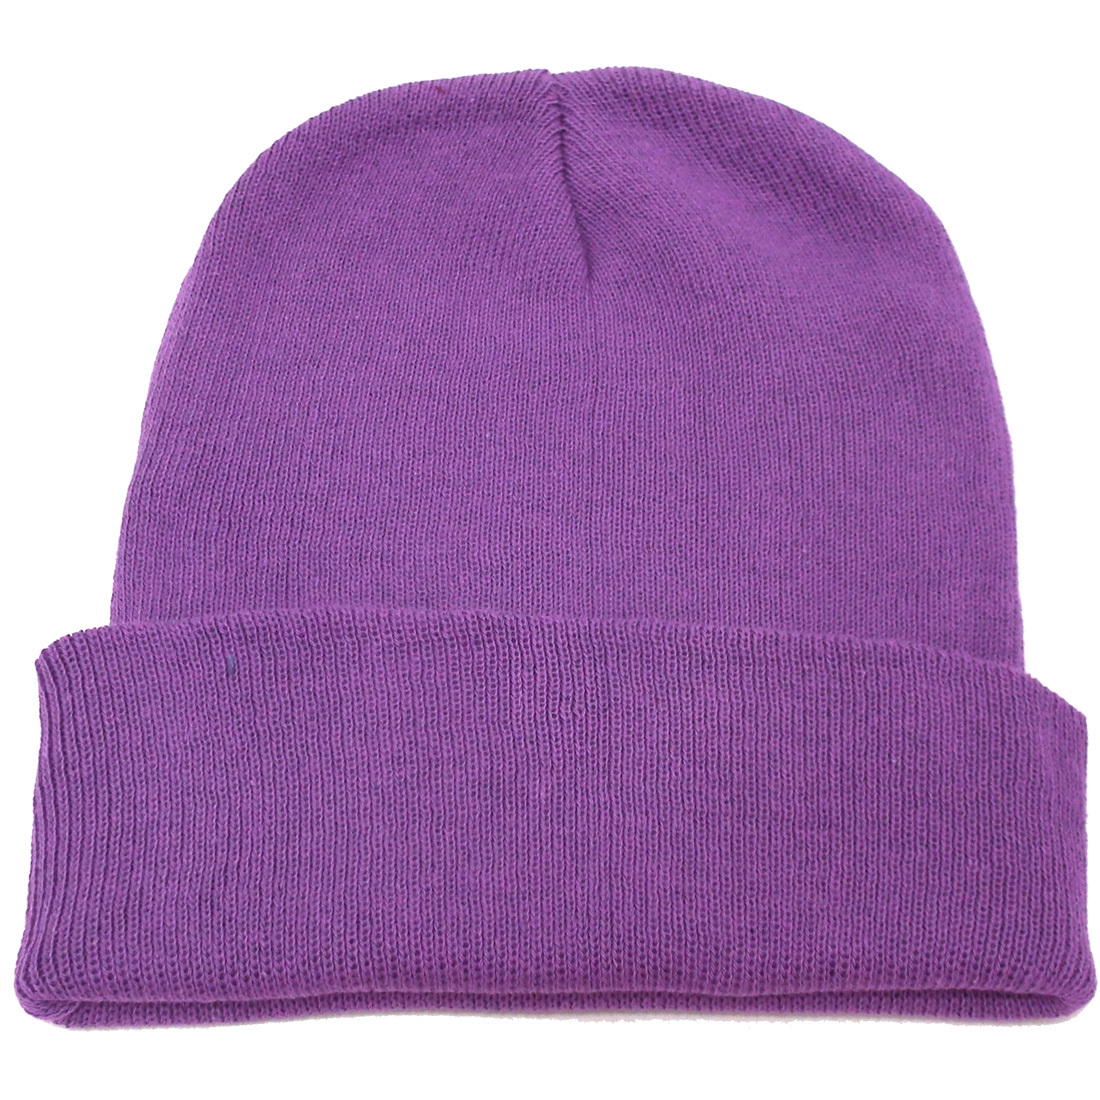 ニットキャップ コットン ニット帽 パープル 紫 ビーニー 春夏 綿 ぴったりフィット knit-1237-15_画像1